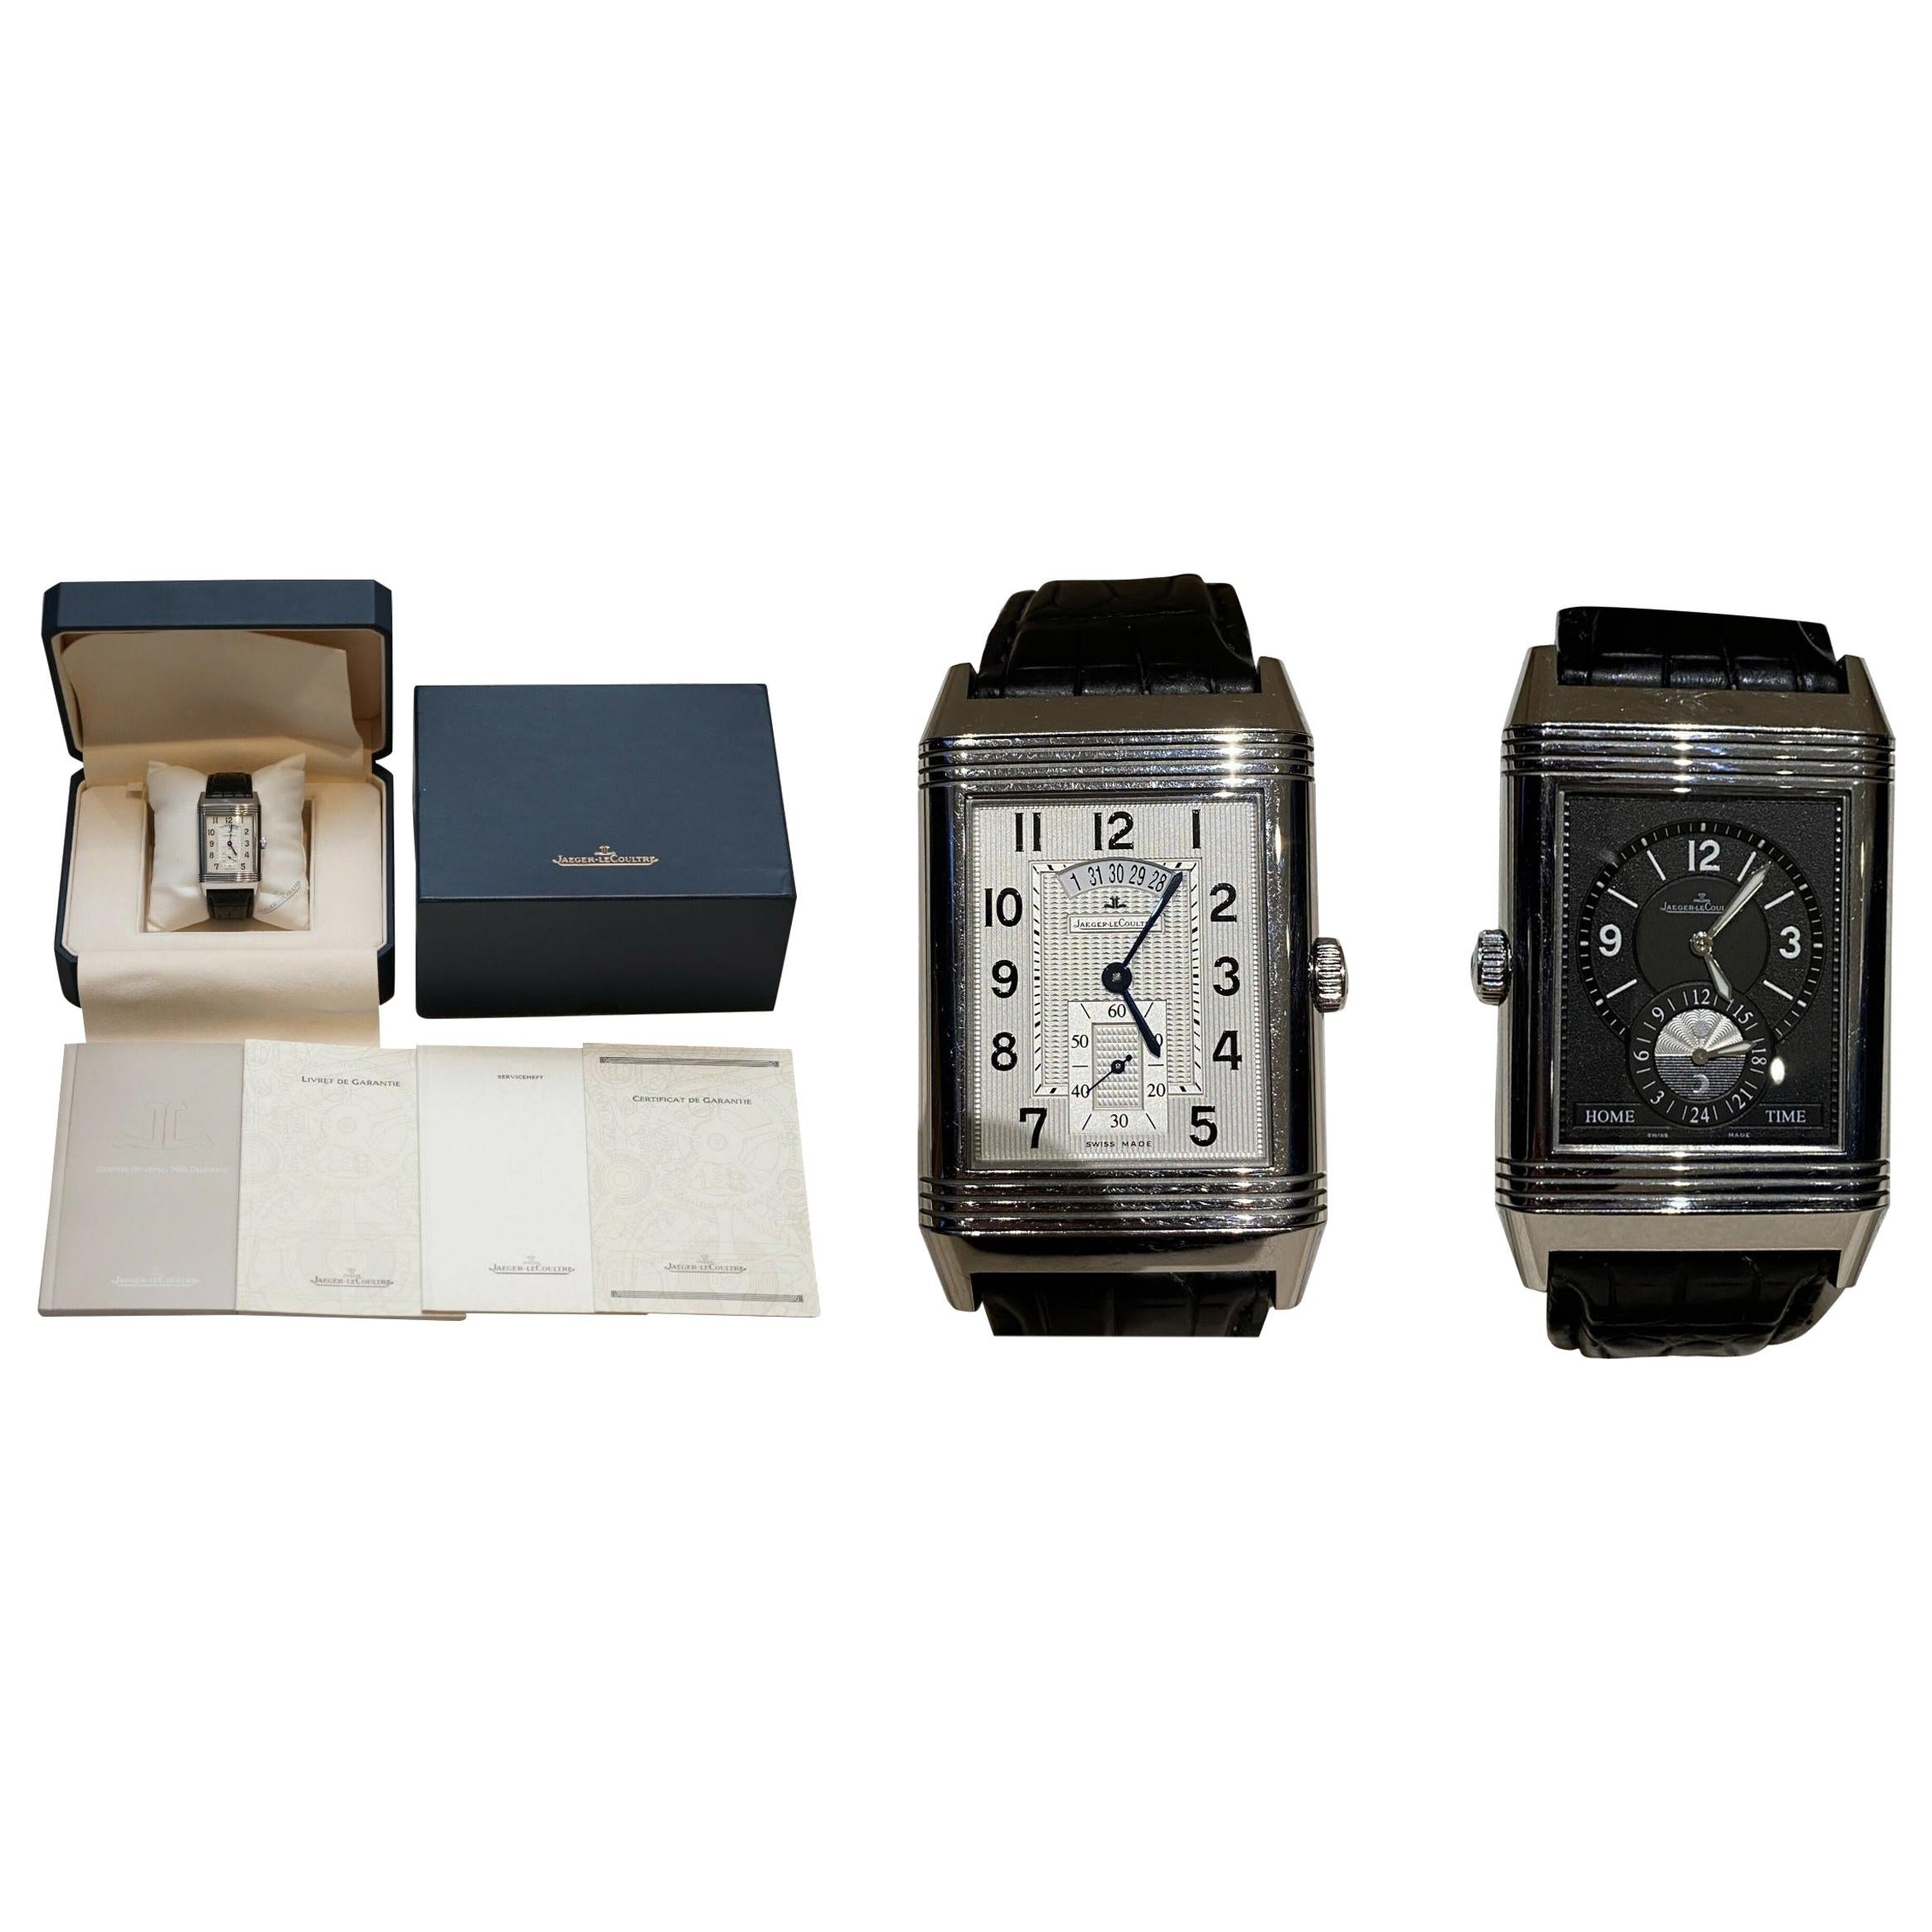 Ltd Edition Jager Lecoultre Grand Reverso 986 Duodate doppelseitige Armbanduhr